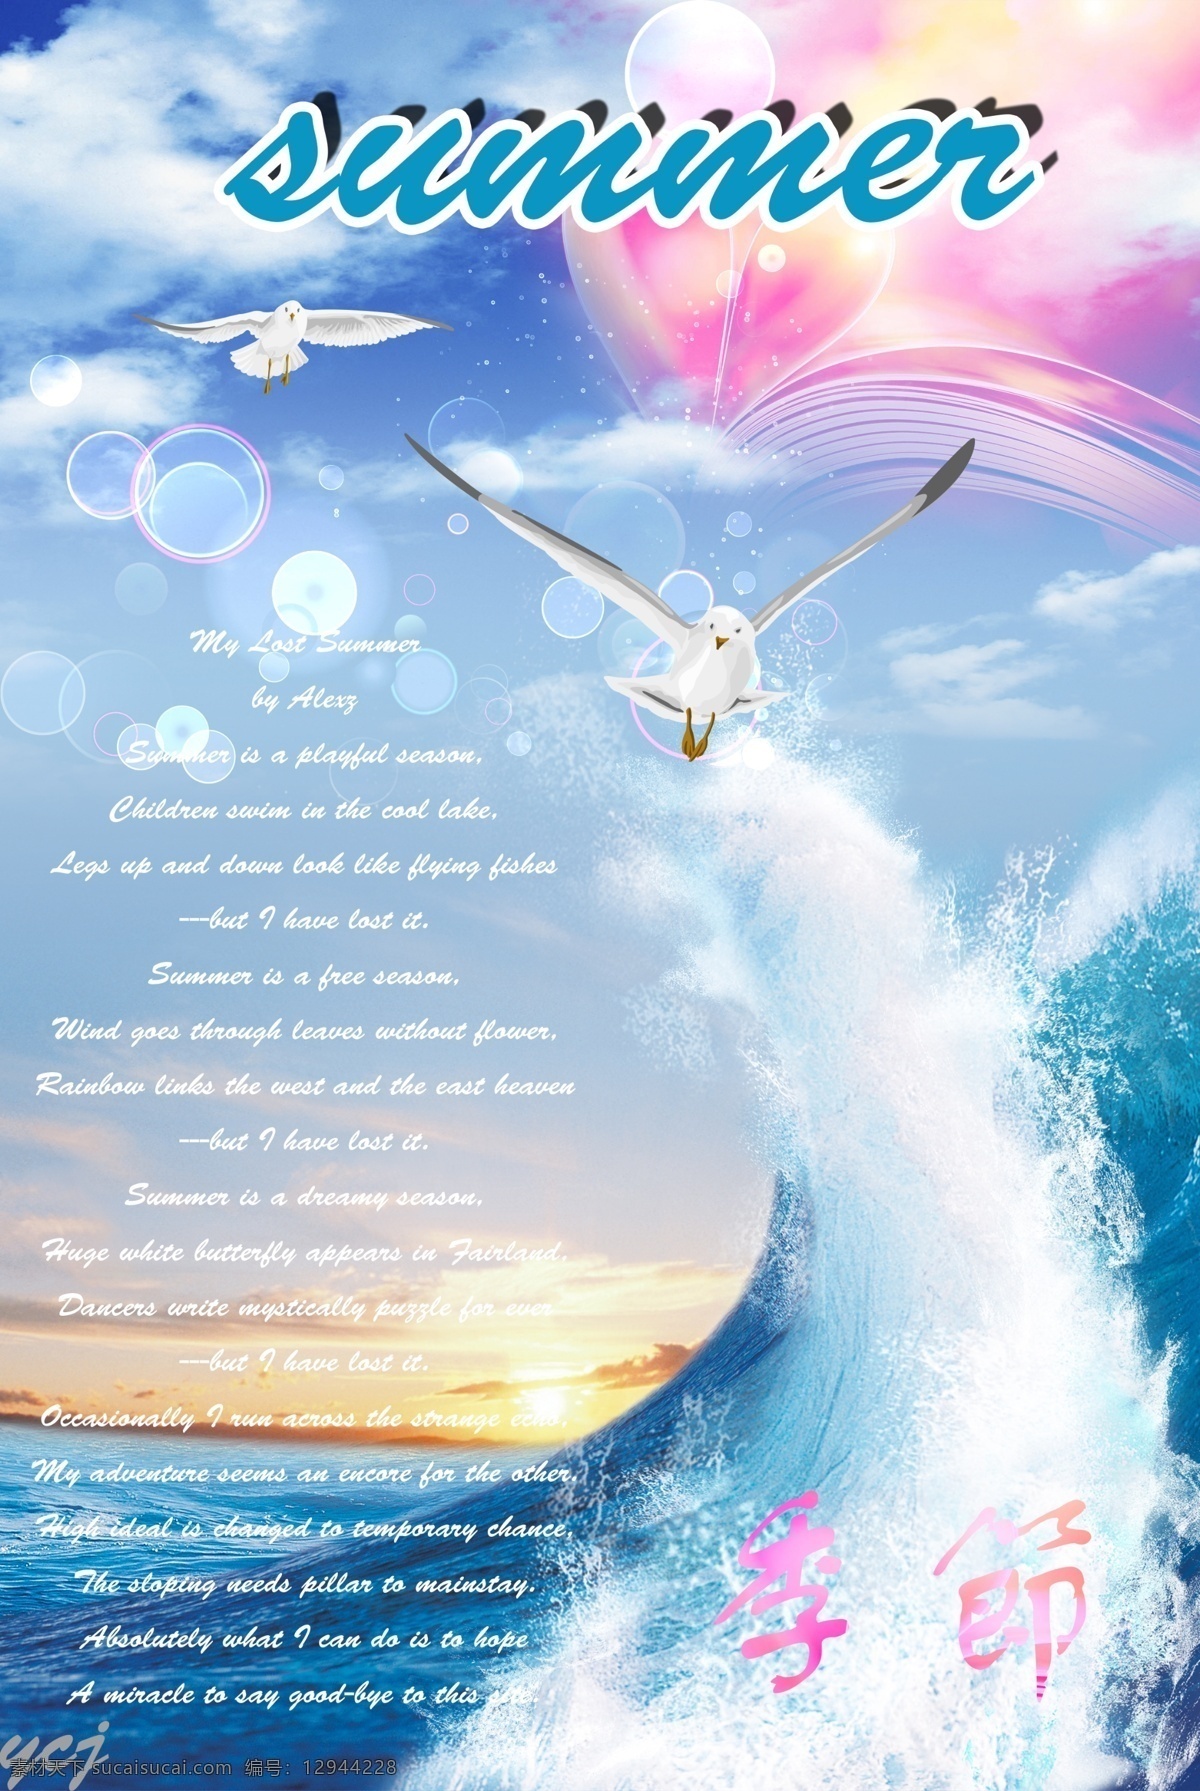 四季 夏天 海浪 海鸥 海洋 梦幻 阳光 装饰画 四季夏天海报 原创设计 原创海报